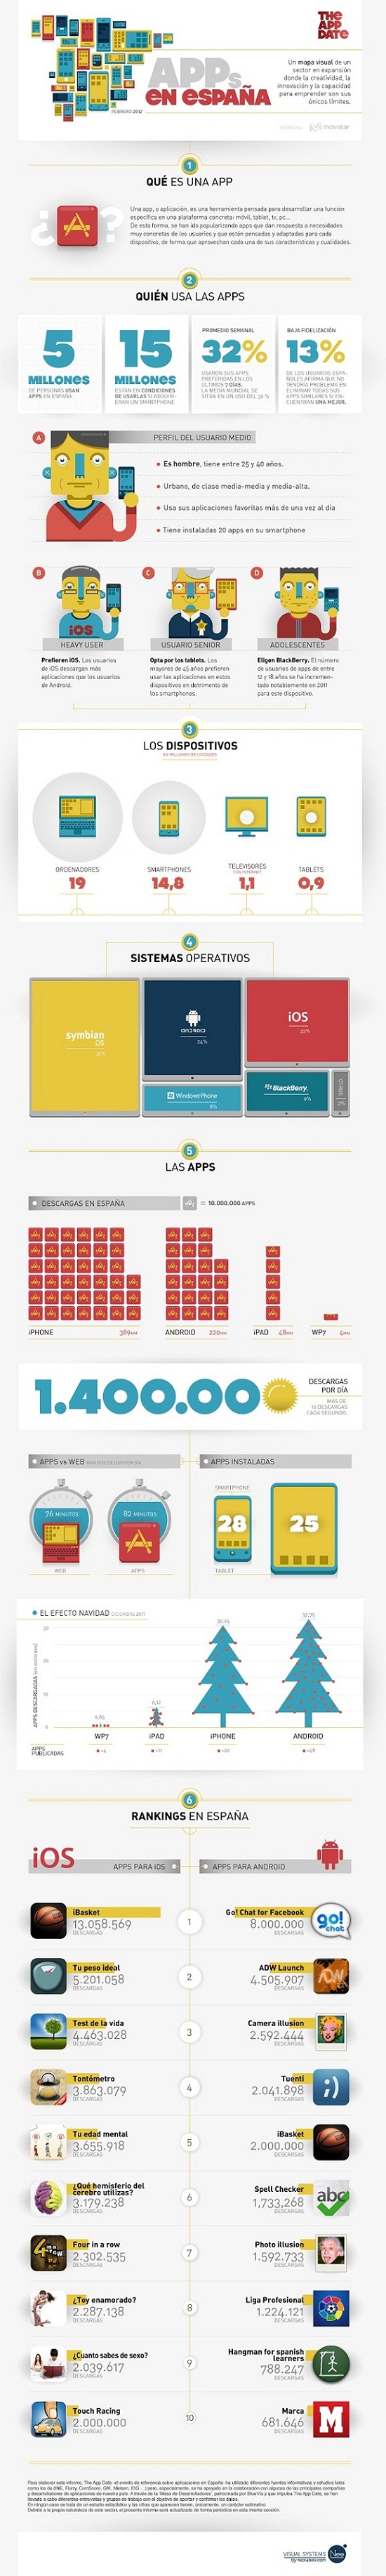 infografia apps.jpg